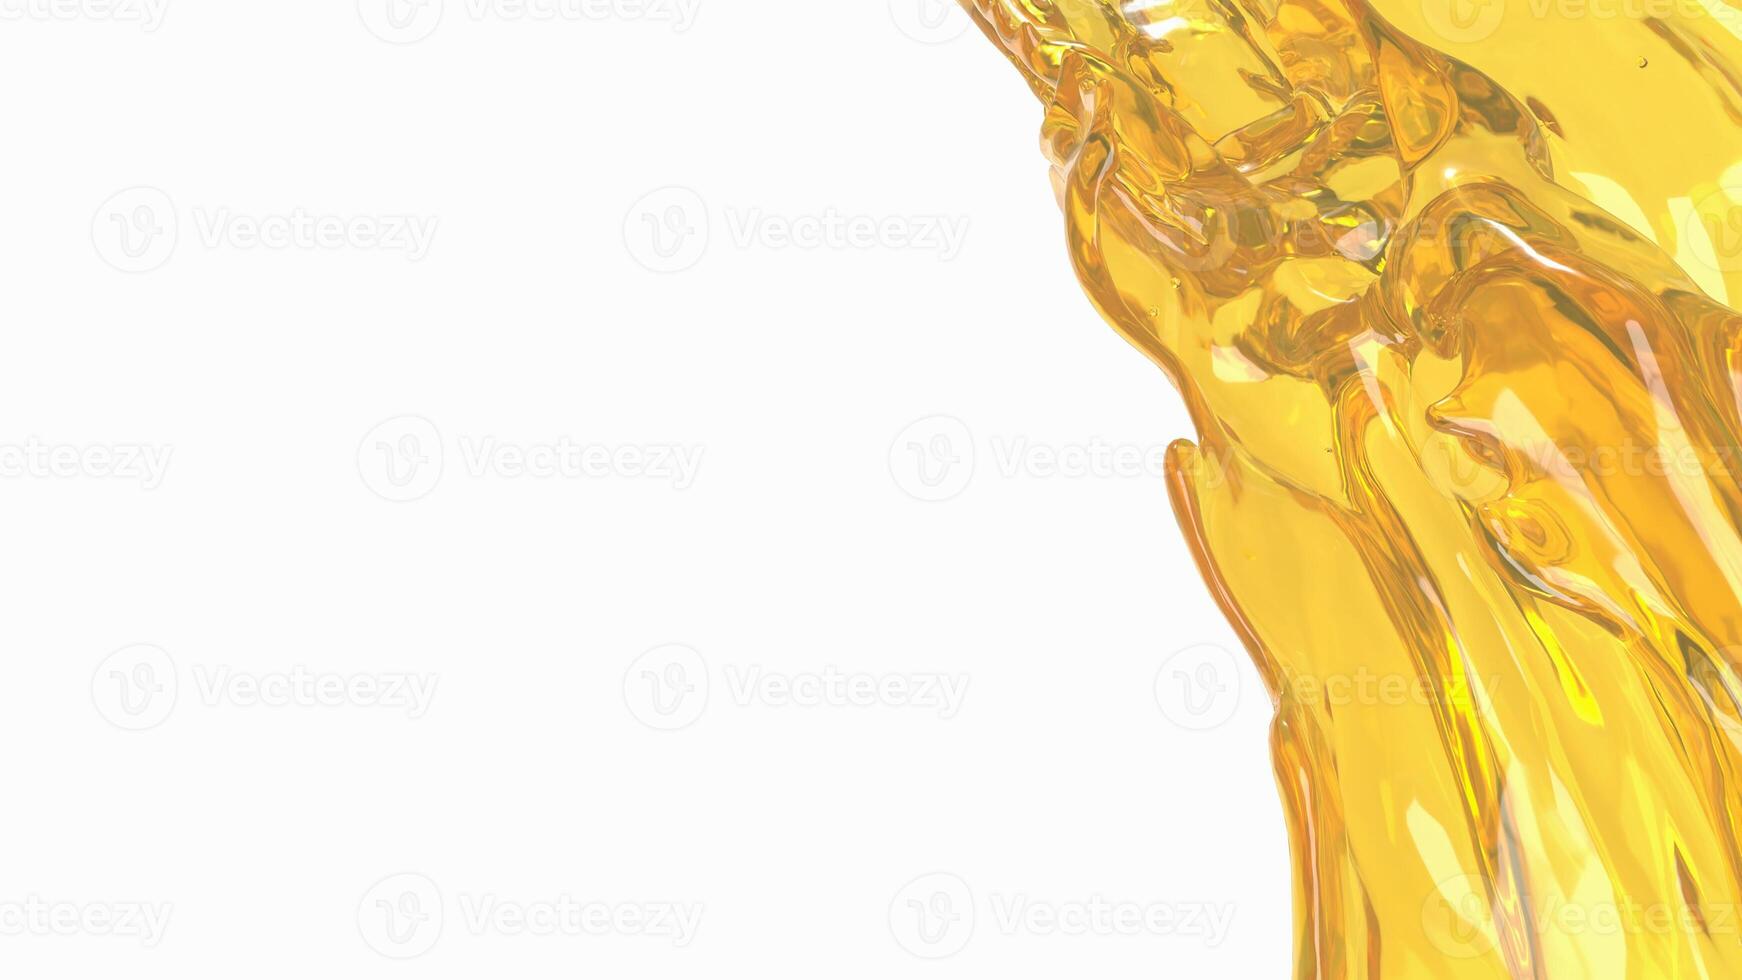 el oro petróleo chapoteo para spa o salud concepto 3d representación. foto